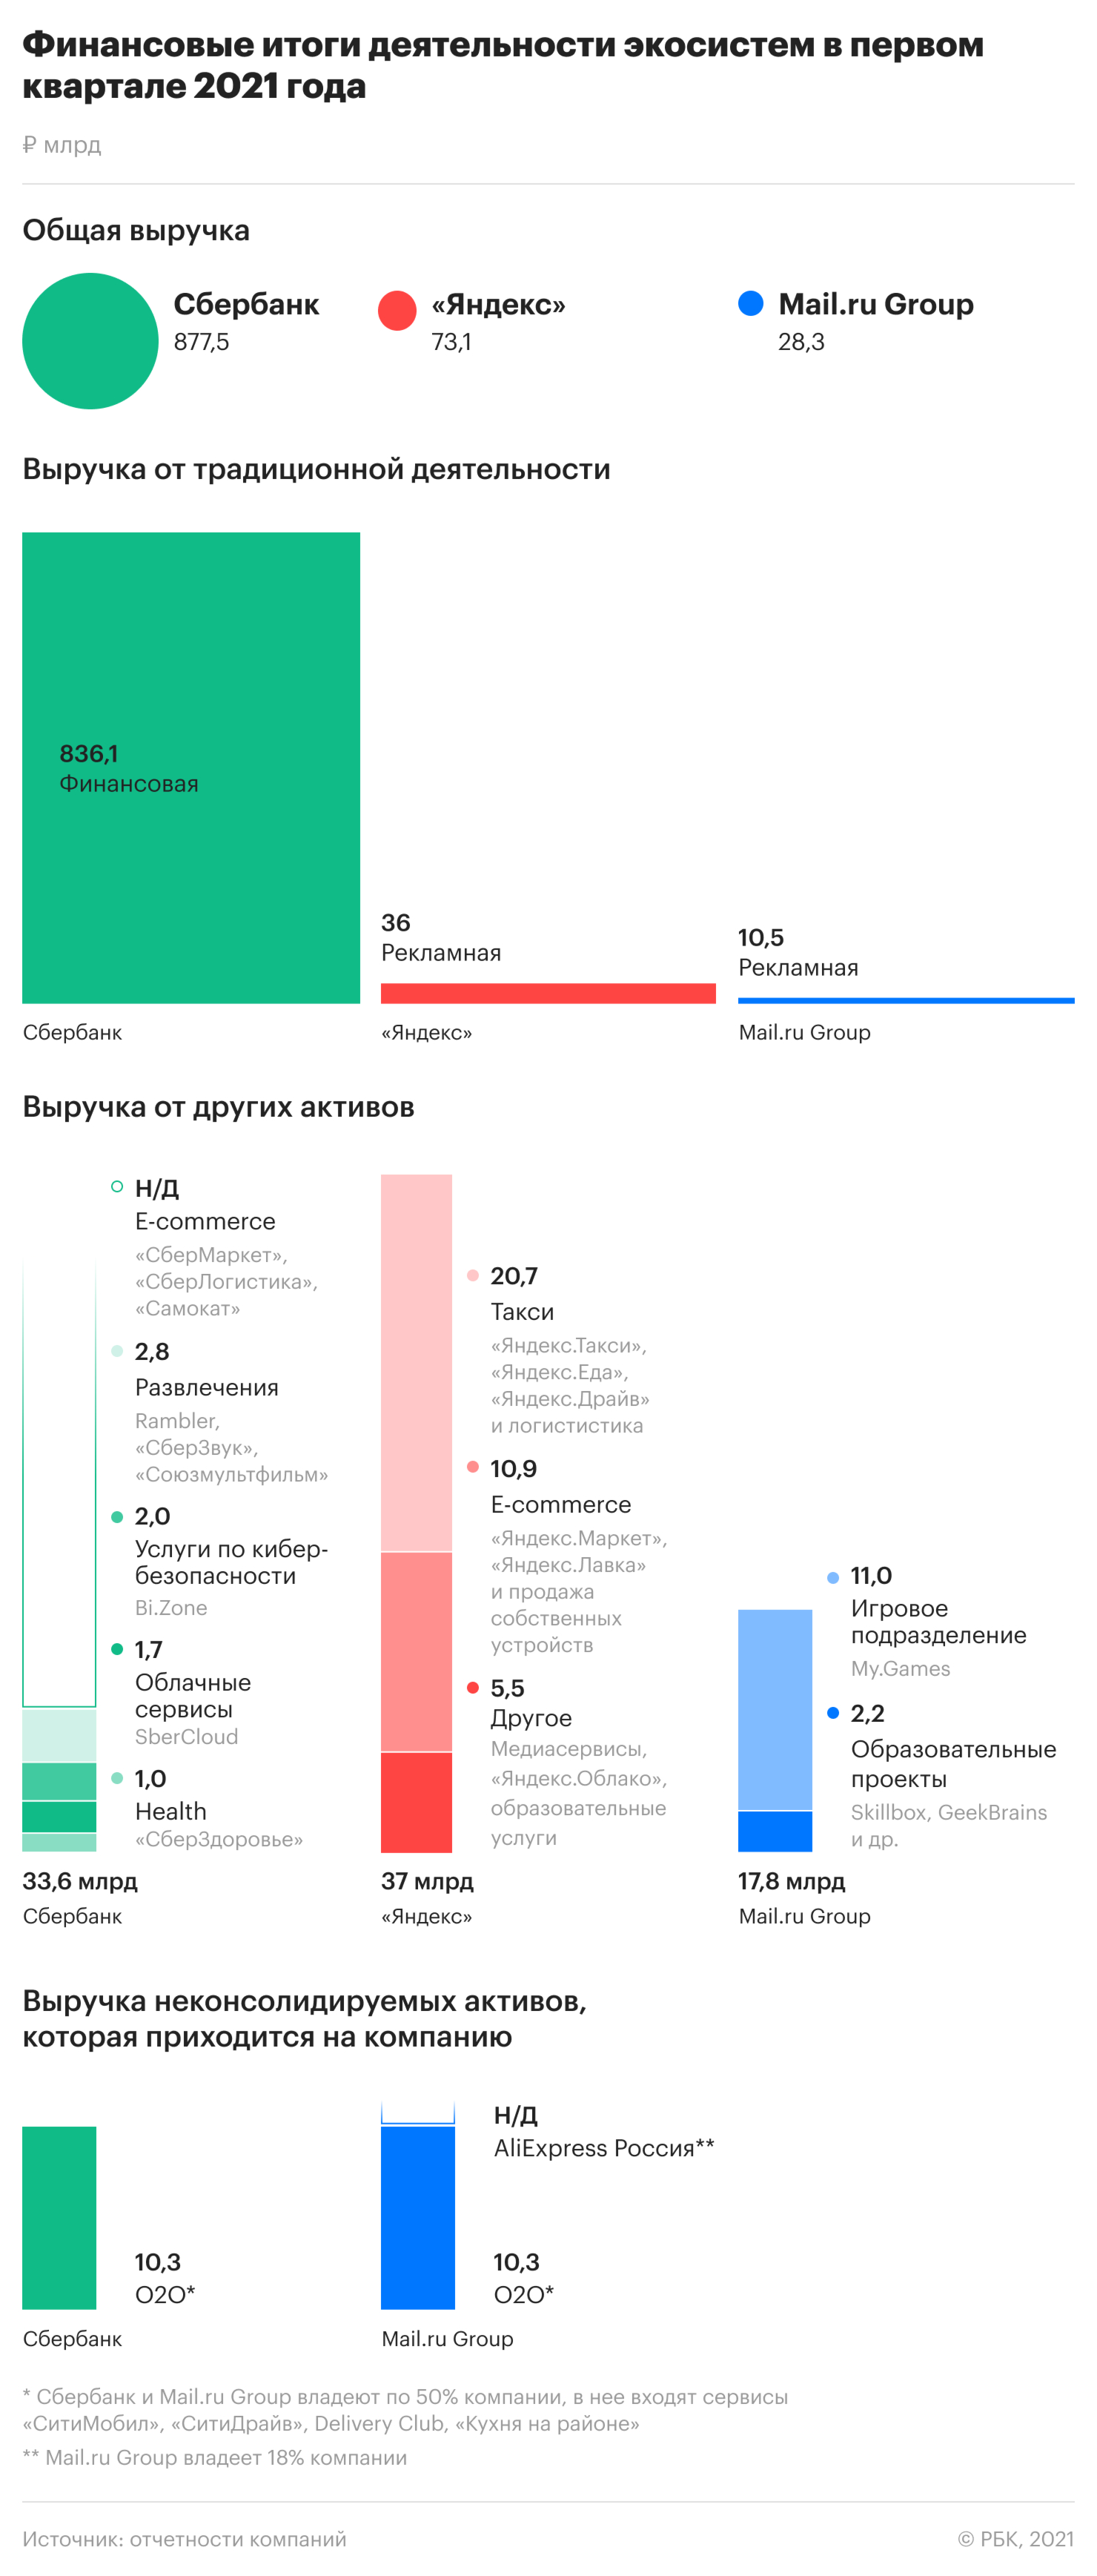 Что получили «Сбер», «Яндекс» и Mail.ru Group от экосистем. Инфографика